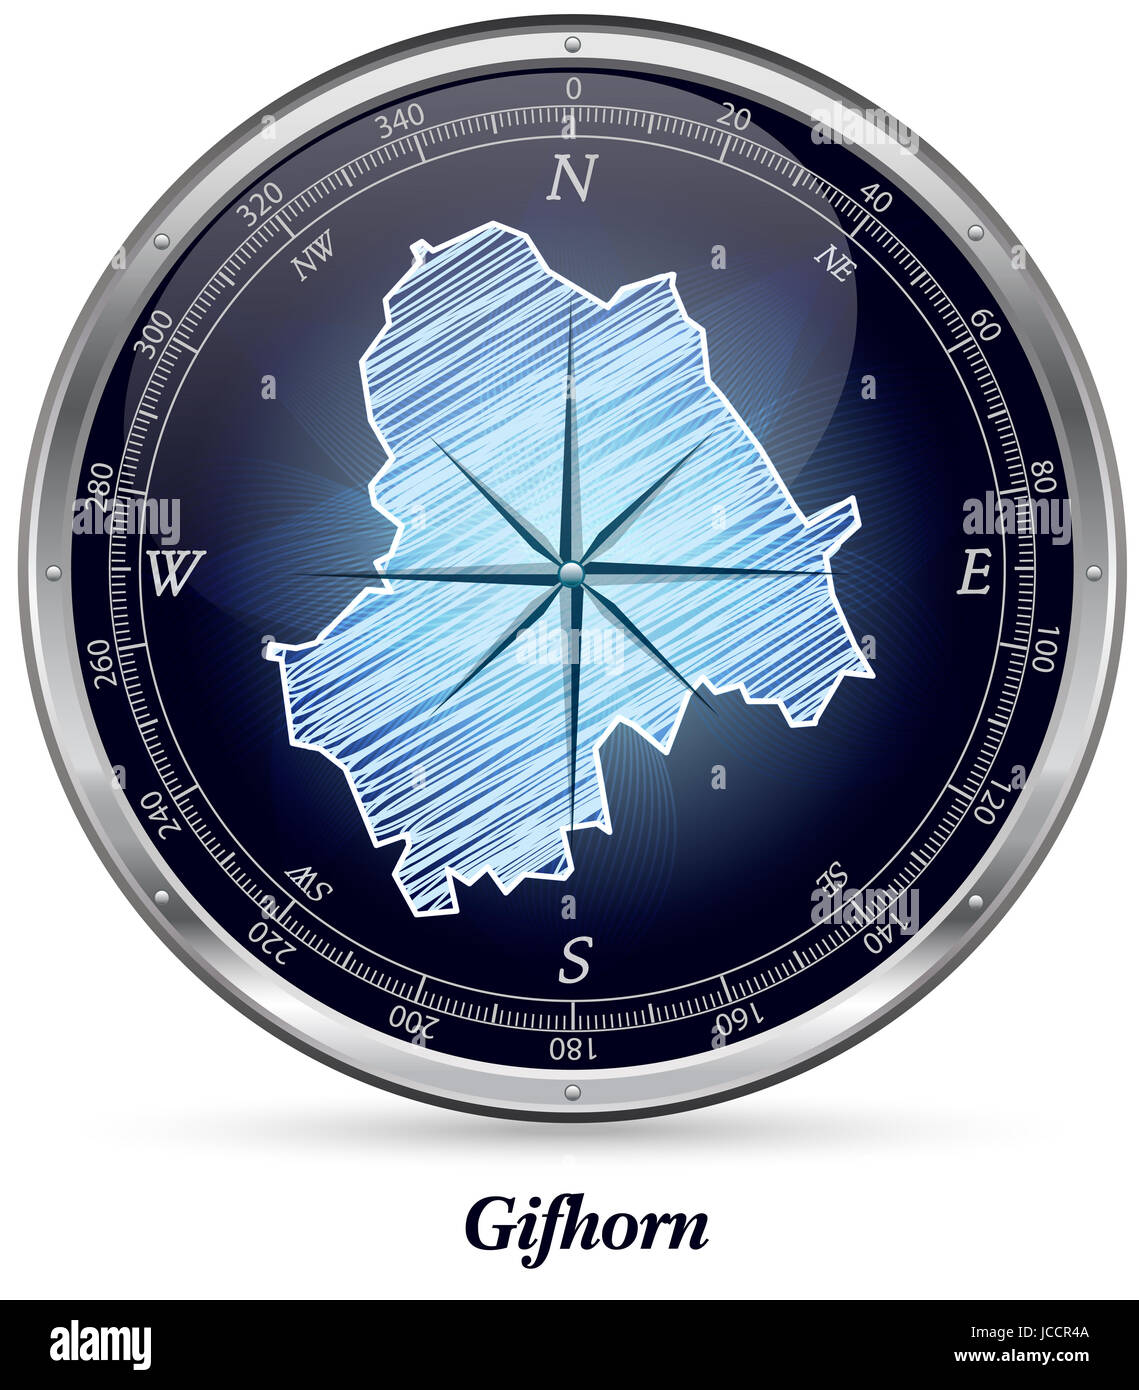 Gifhorn Mit Grenzen in Chrom Stockfoto